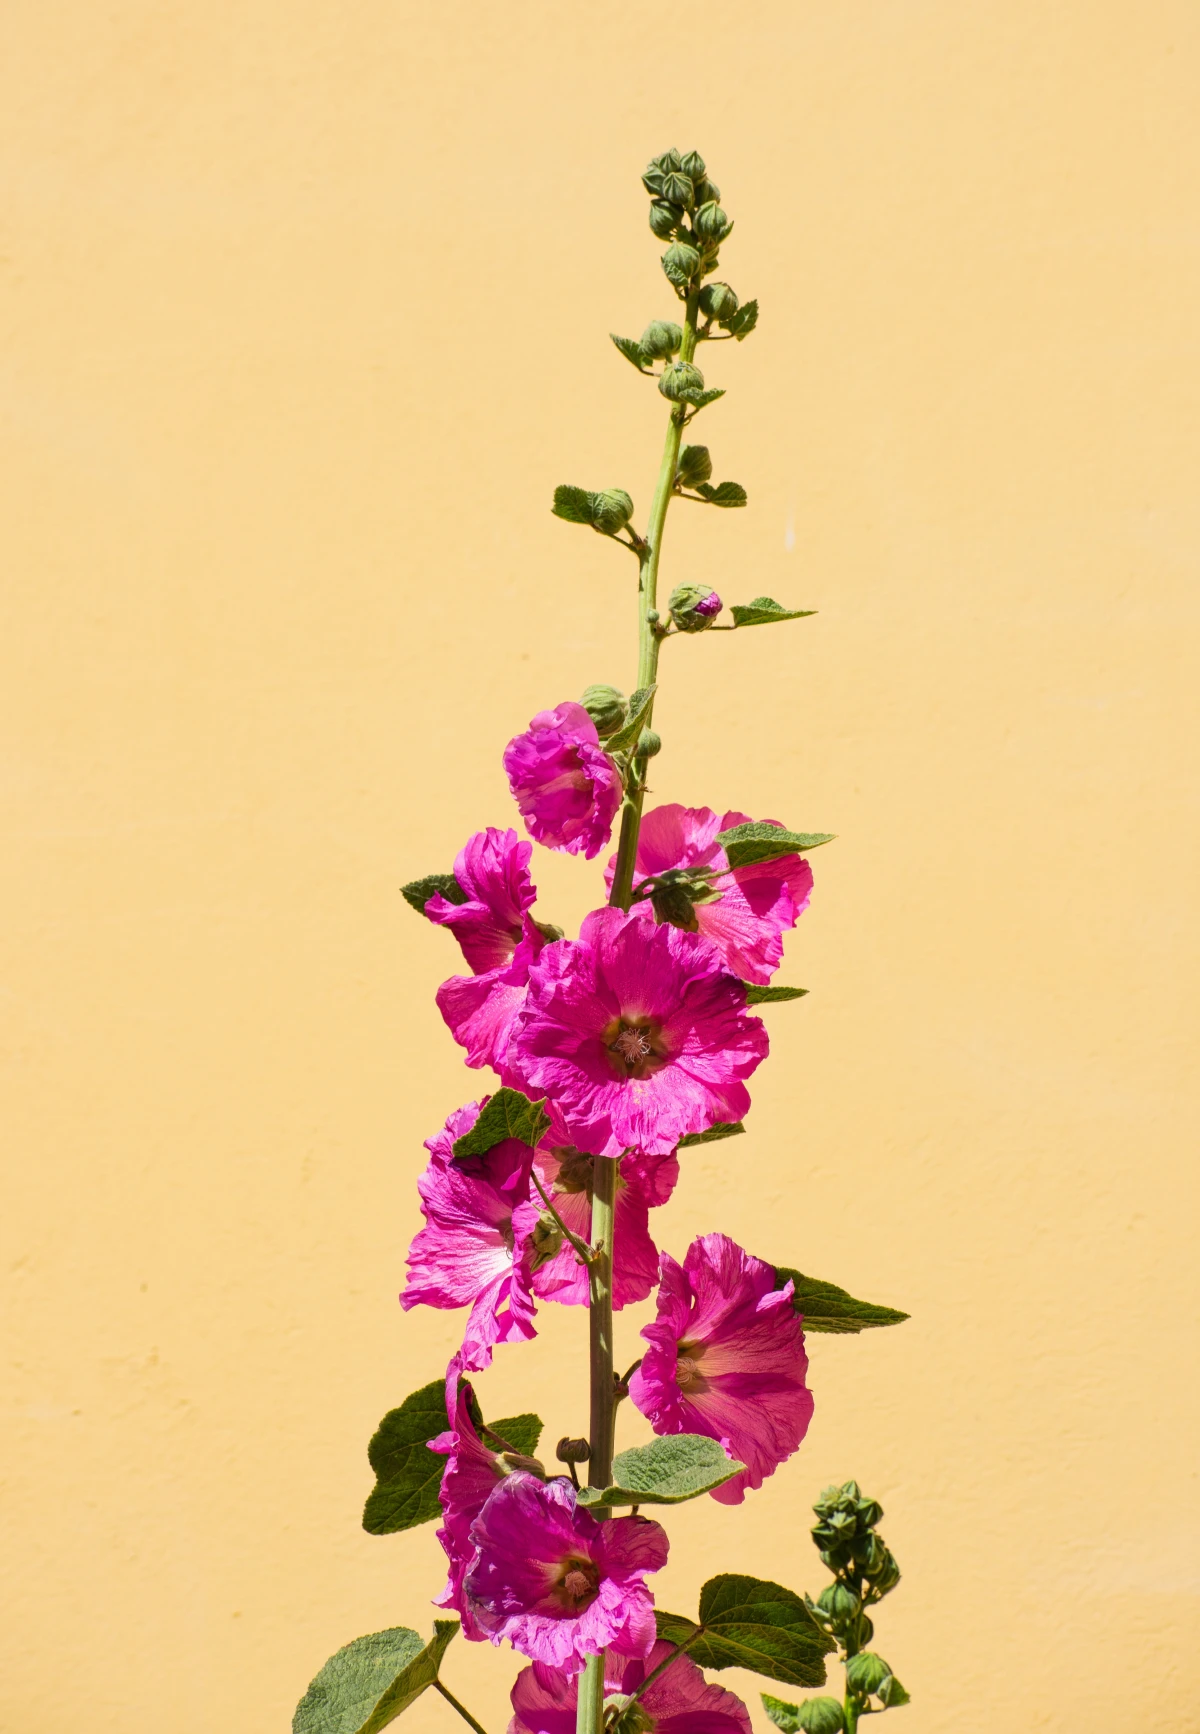 hollyhock flower in pink